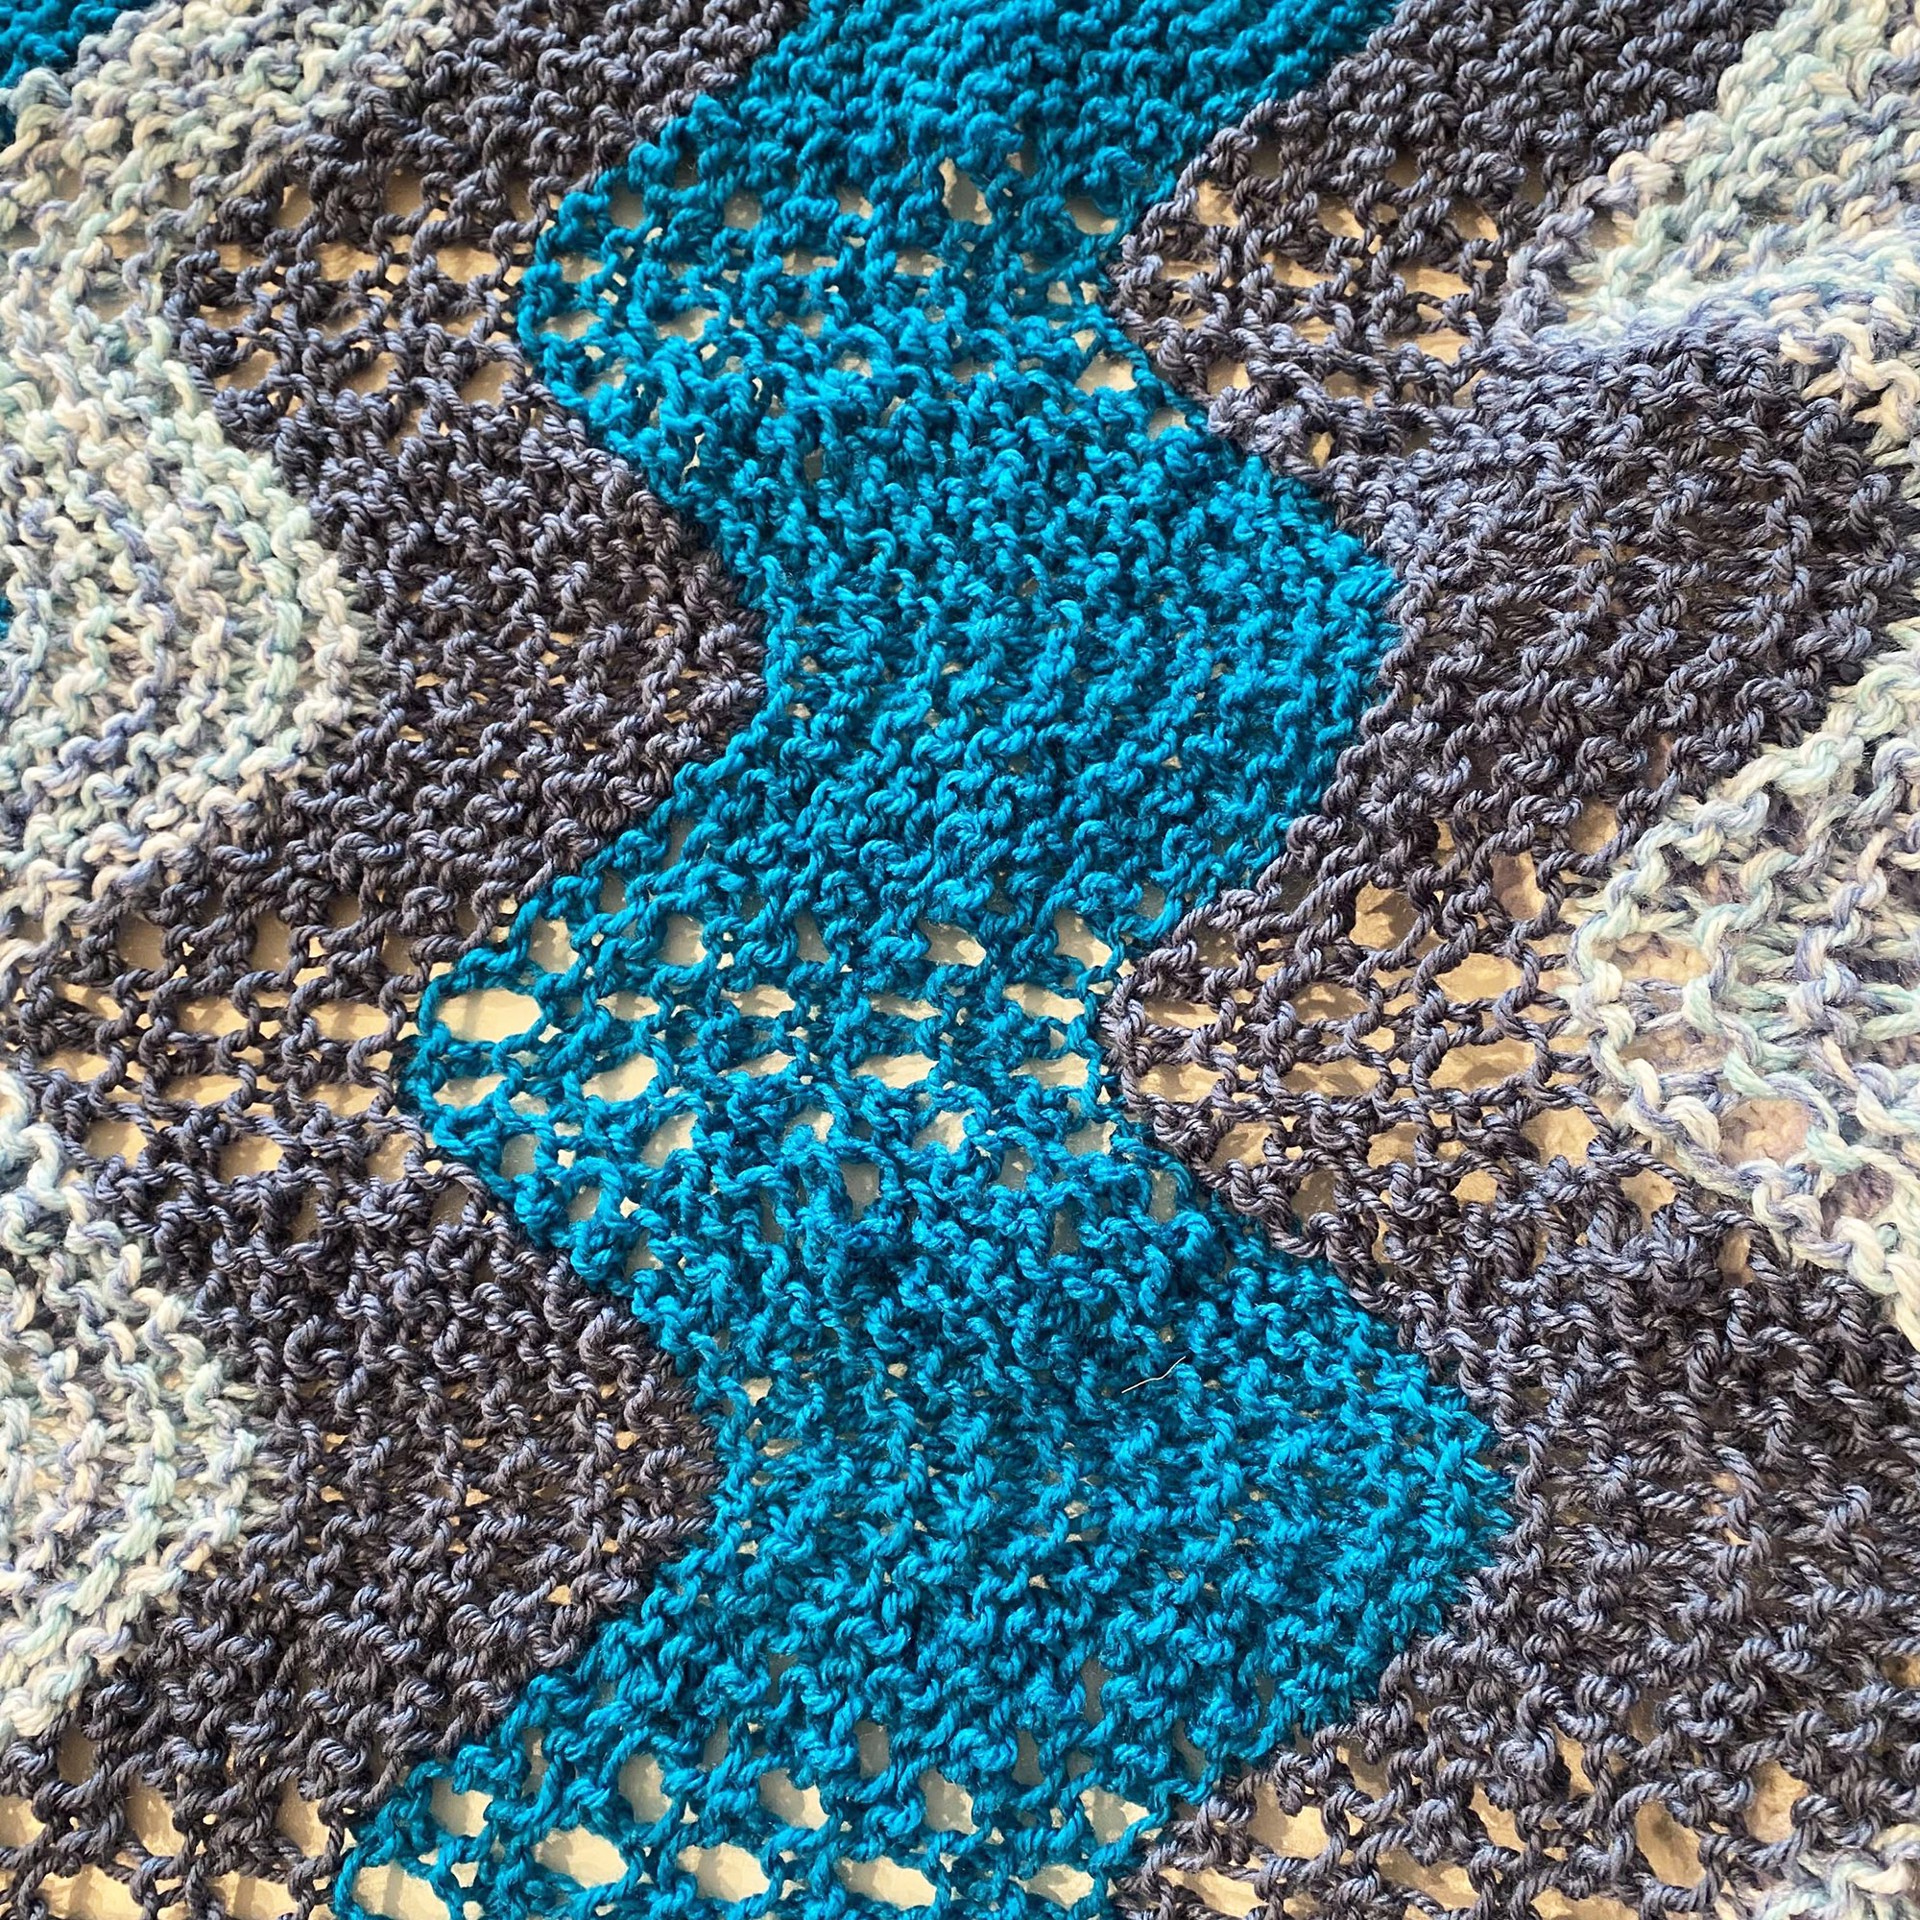 Handmade Lap Blanket by Cathy Miller